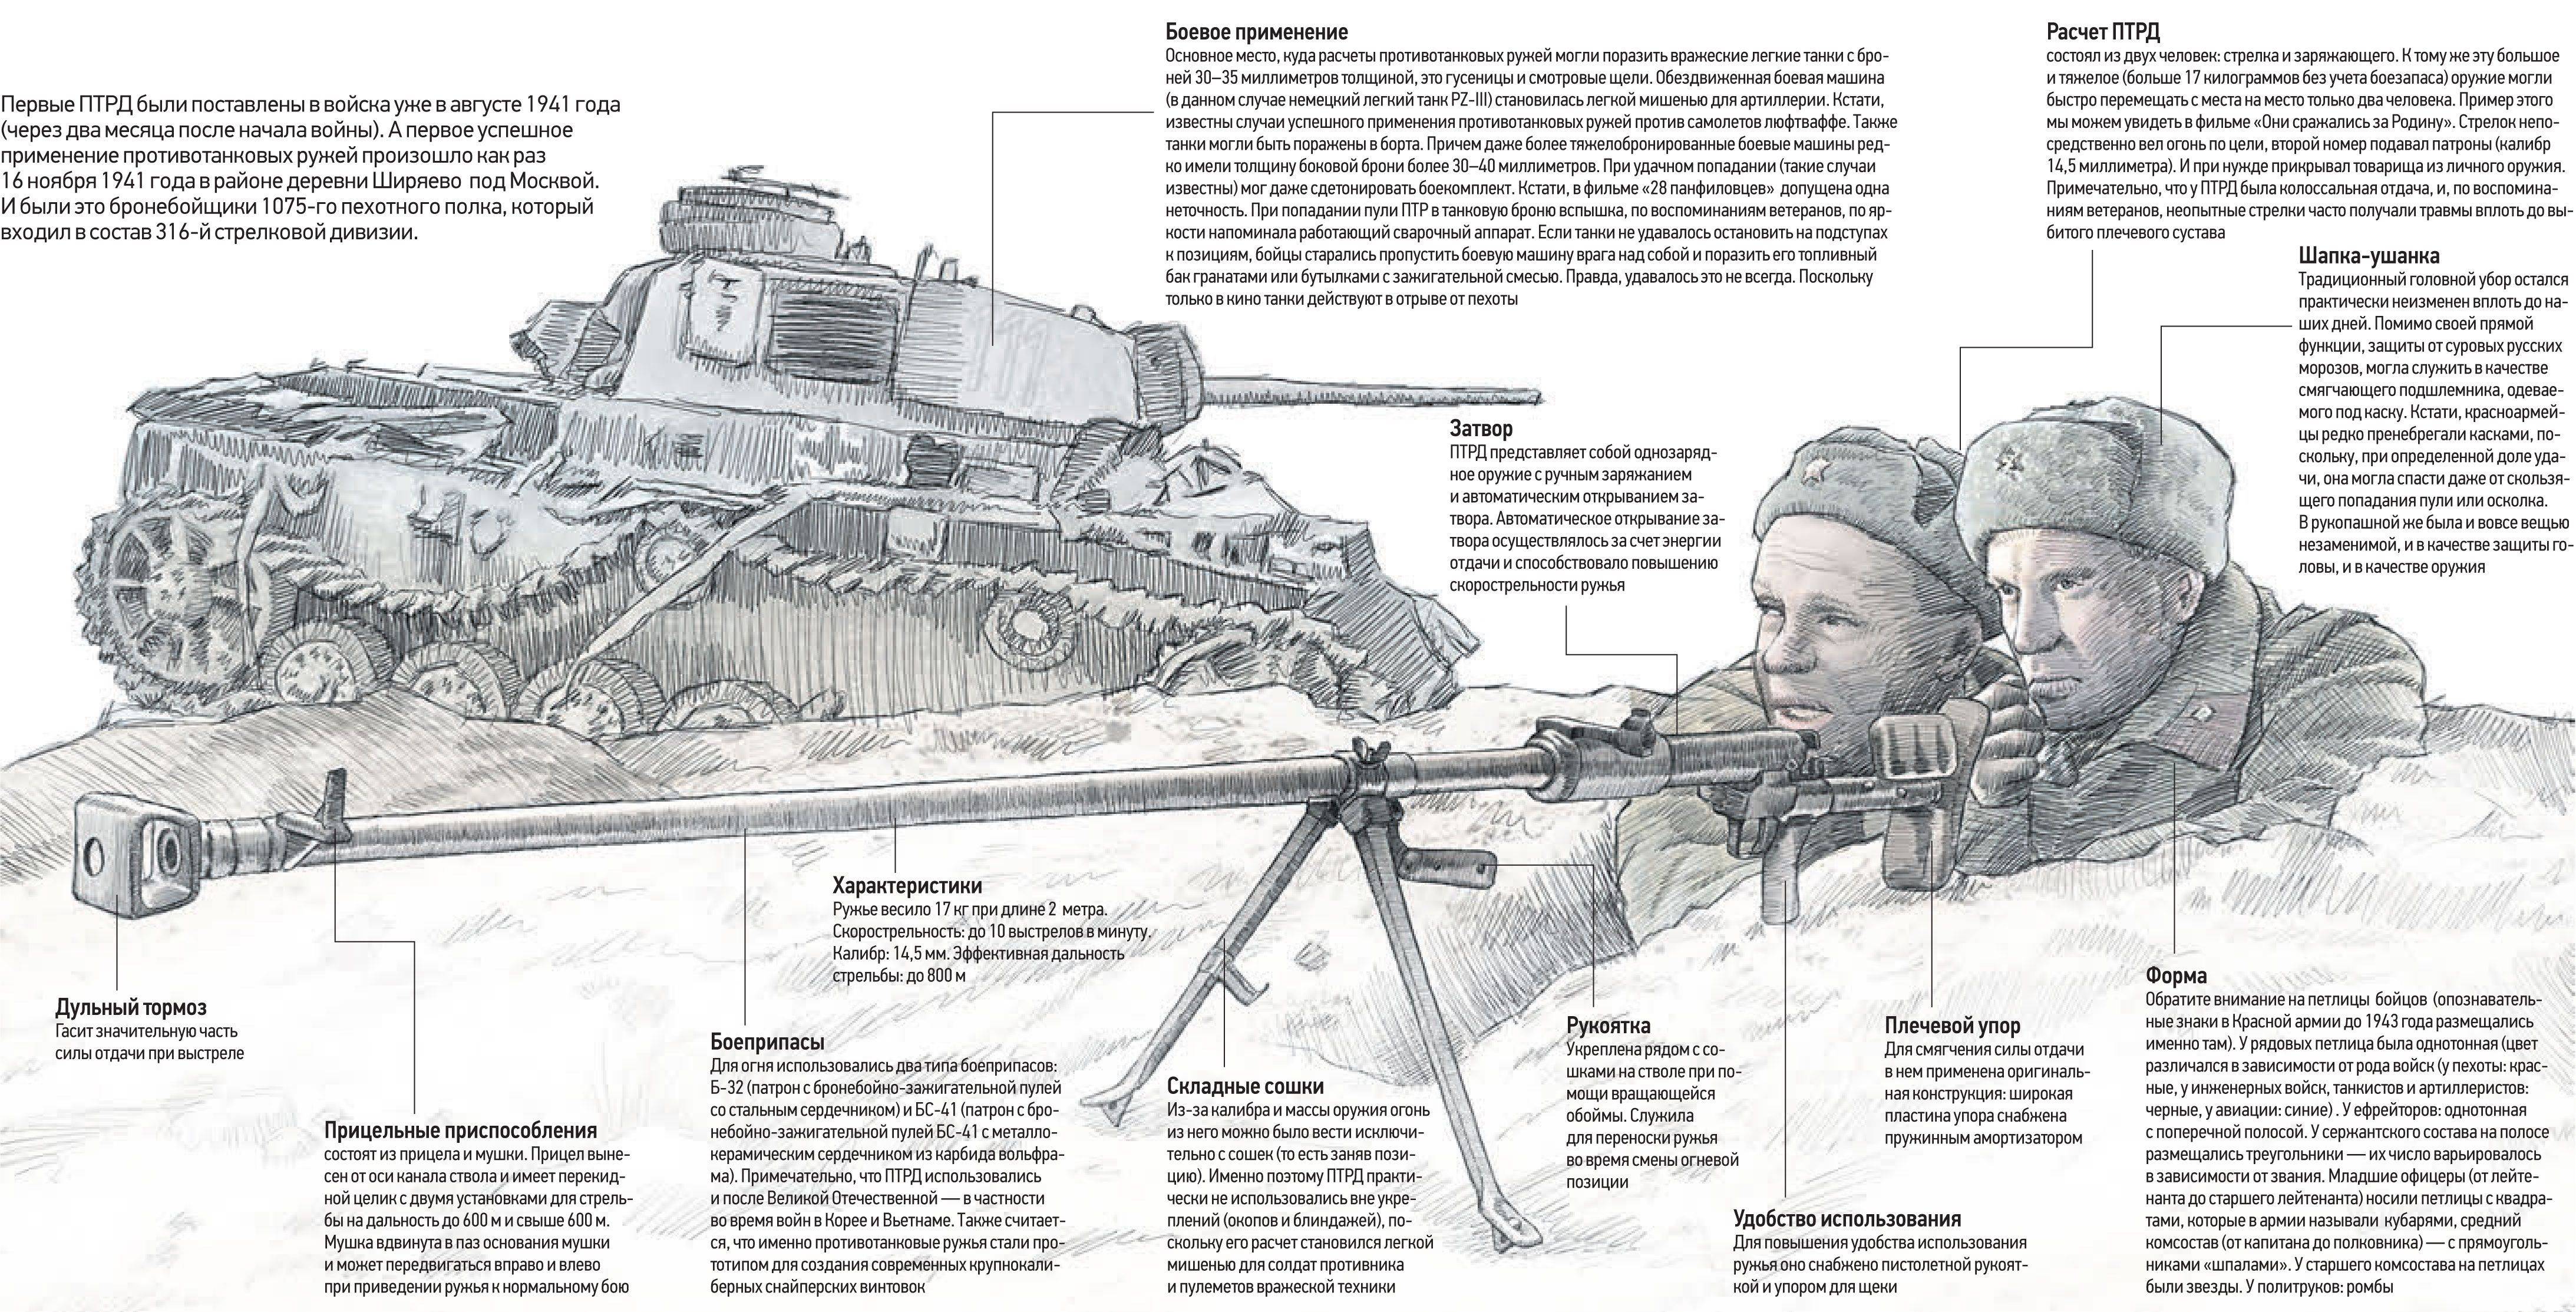 Охота на танки: как советские ружья остановили нацистскую бронетехнику